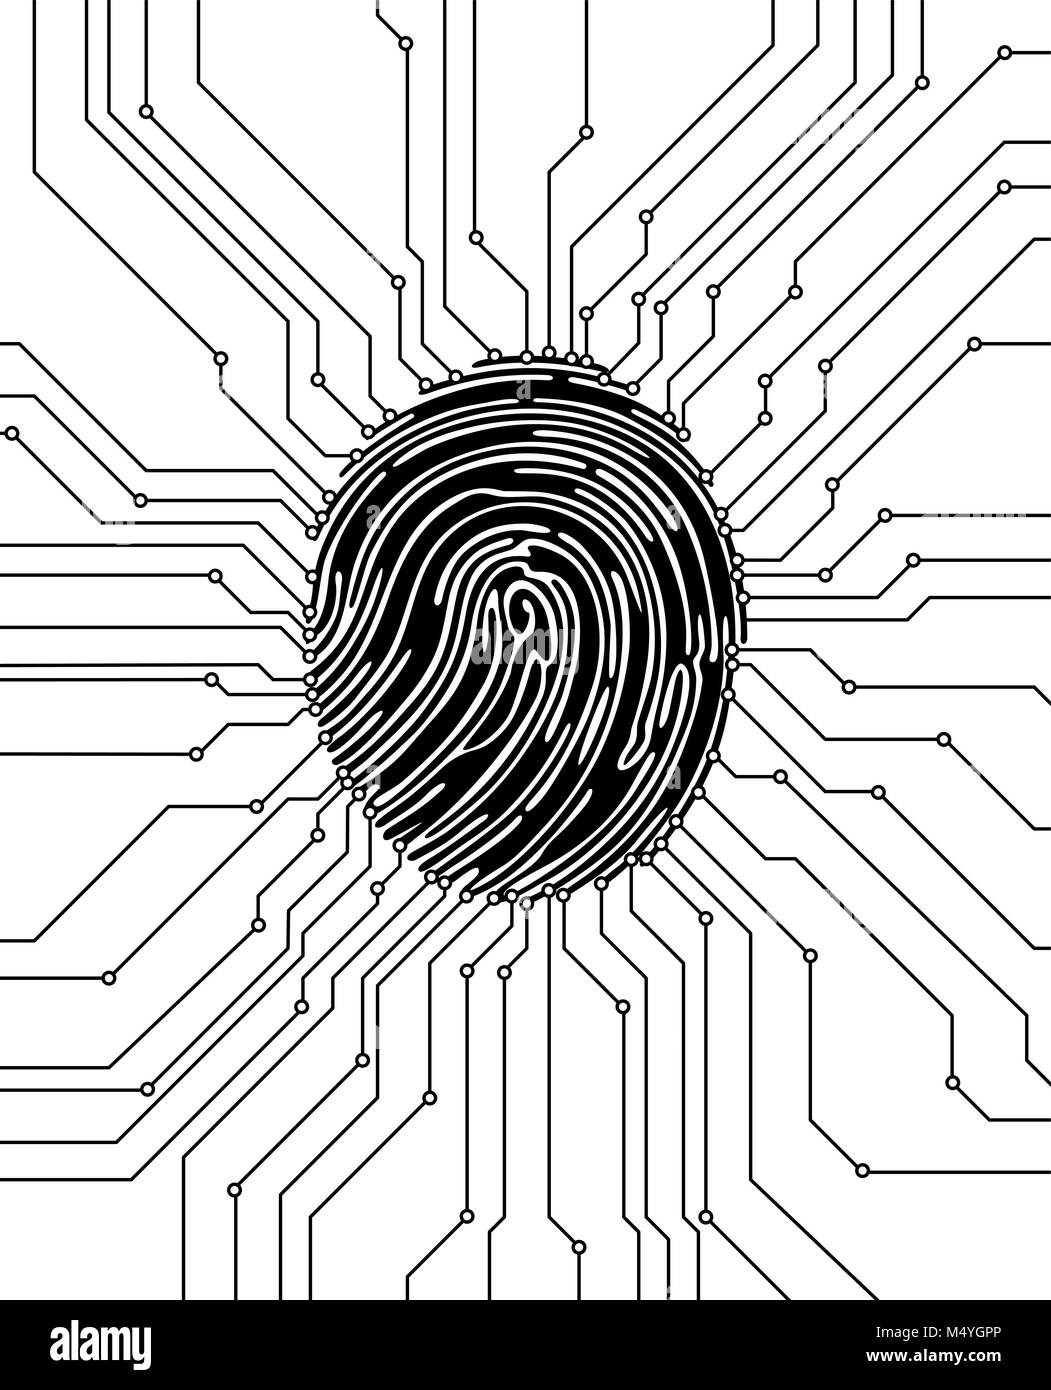 Fingerprint Bild scannen. Sicherheitskonzept. Die biometrische Identifikation. Vector Illustration. Stock Vektor